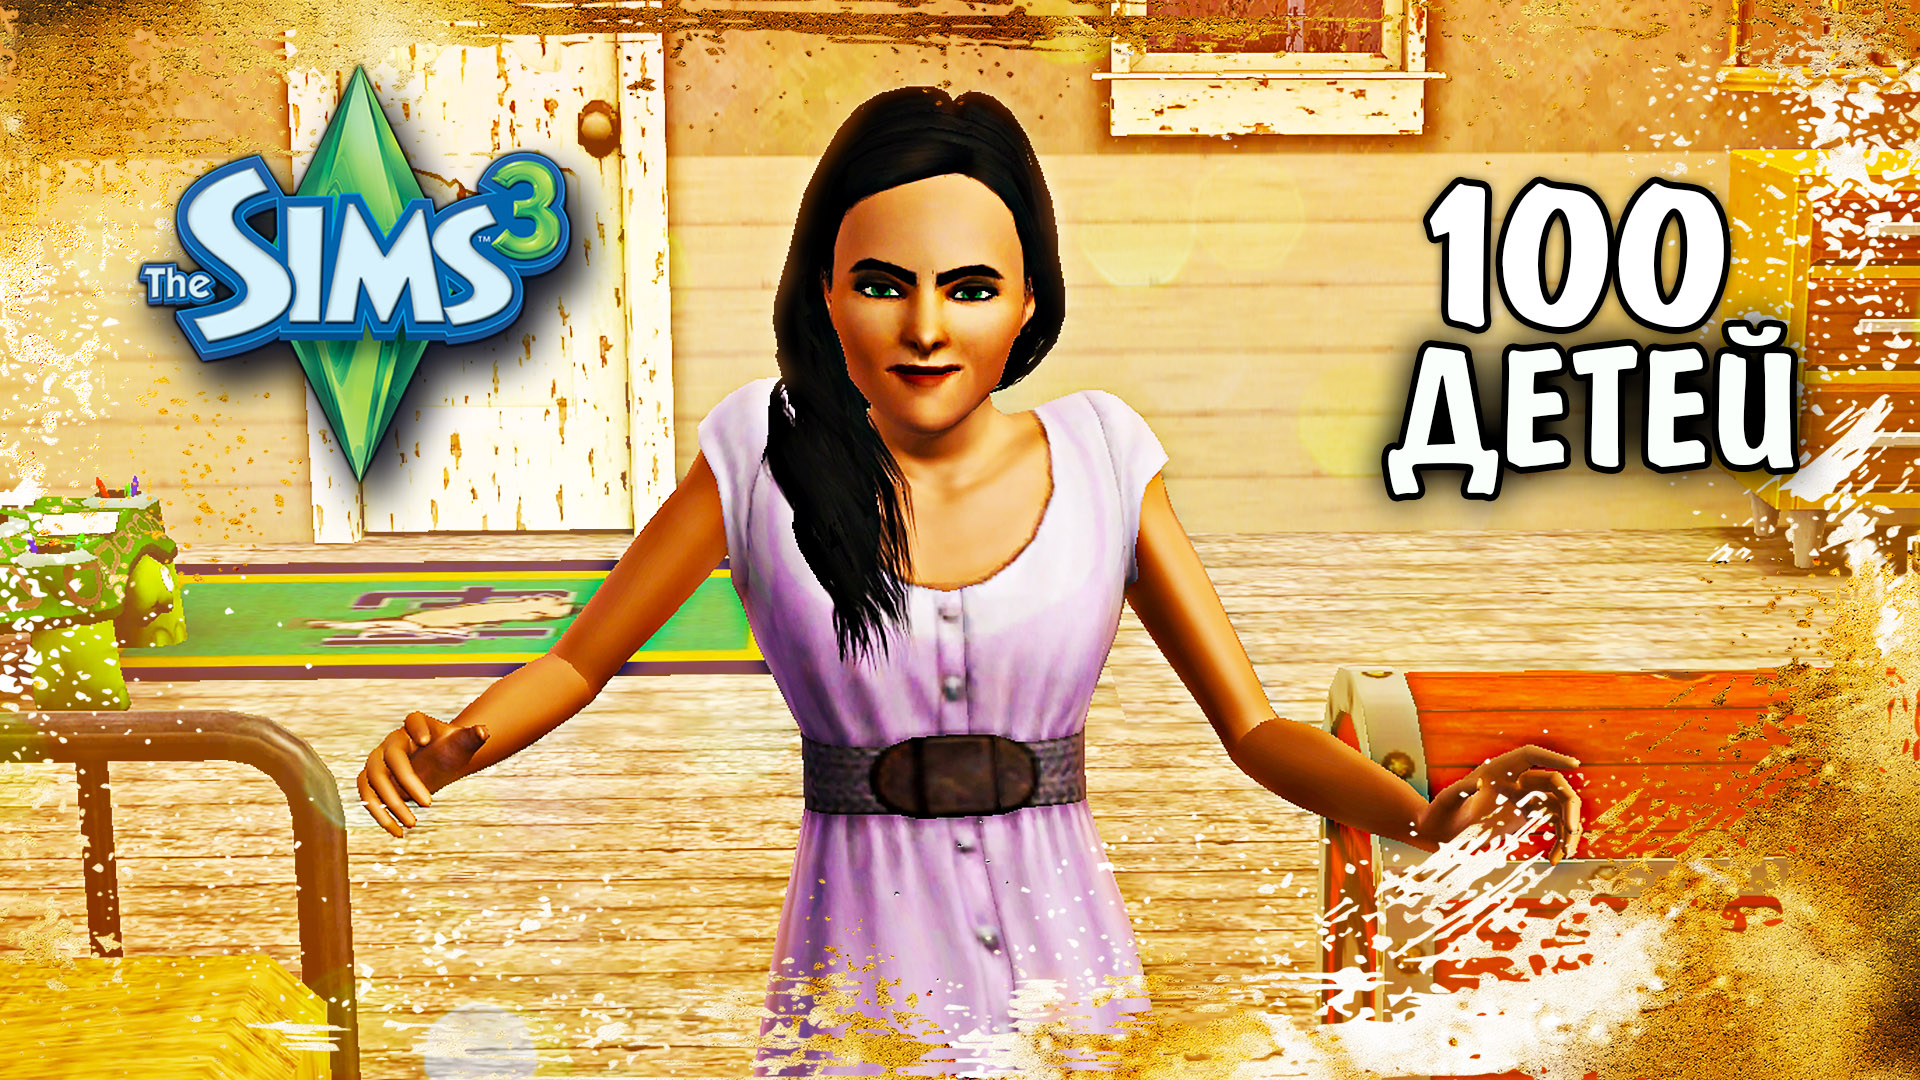 Погрязли в пеленках и подгузниках - The Sims 3 Челлендж 100 ДЕТЕЙ